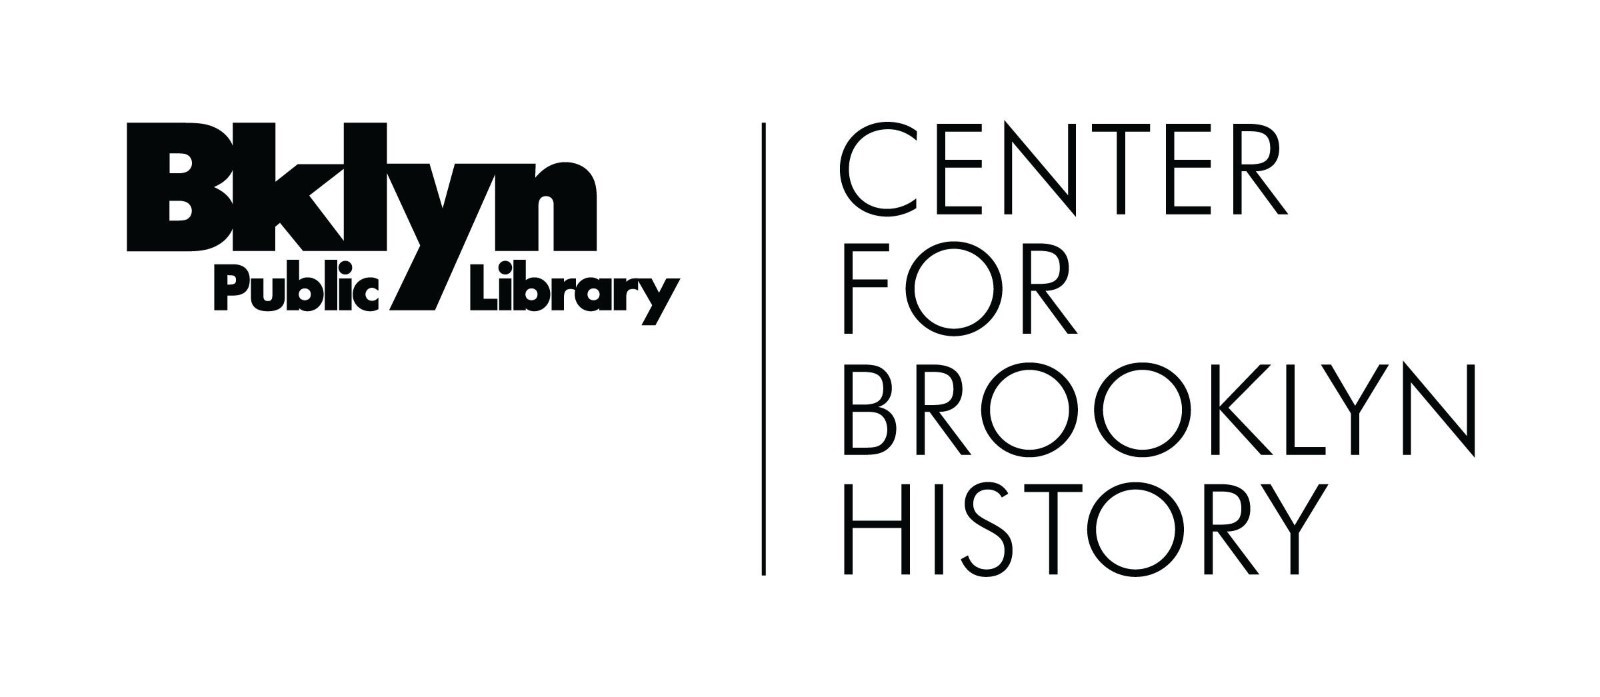 Biblioteca Pública do Brooklyn, Centro de História do Brooklyn.